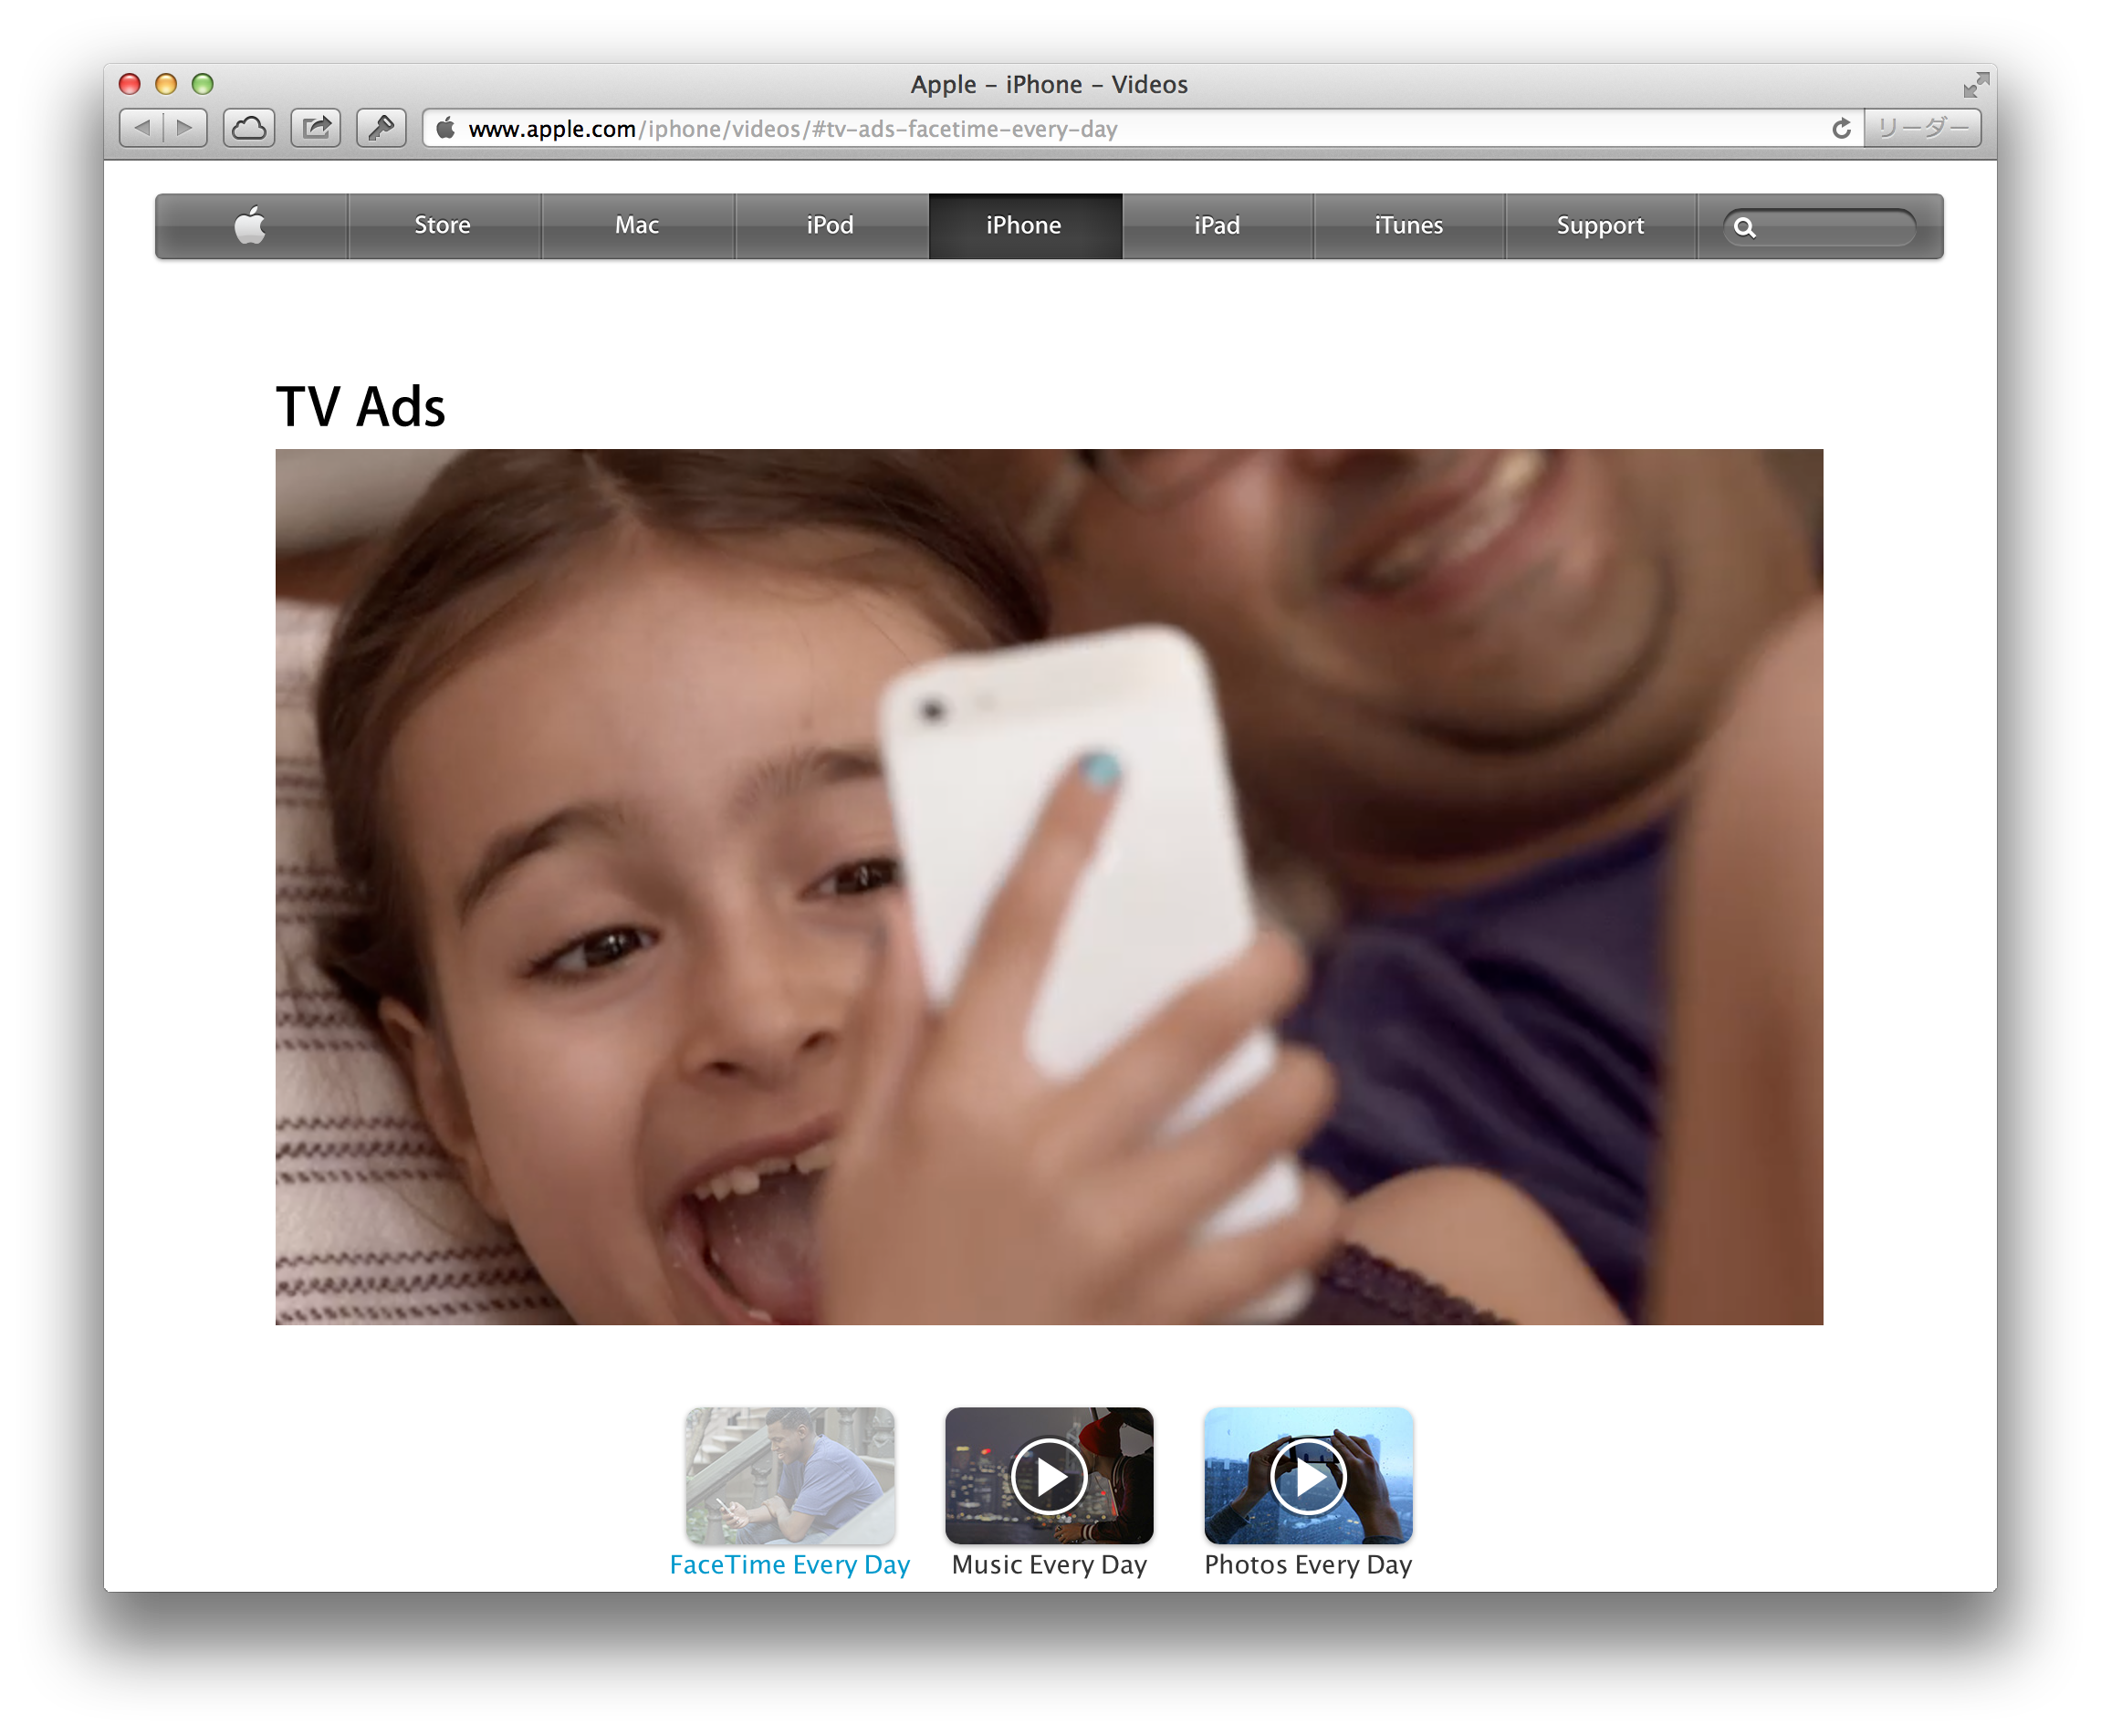 AppleのiPhoneのコマーシャル「FaceTime Every Day」は日常にこそドラマがあることを思い出させてくれる